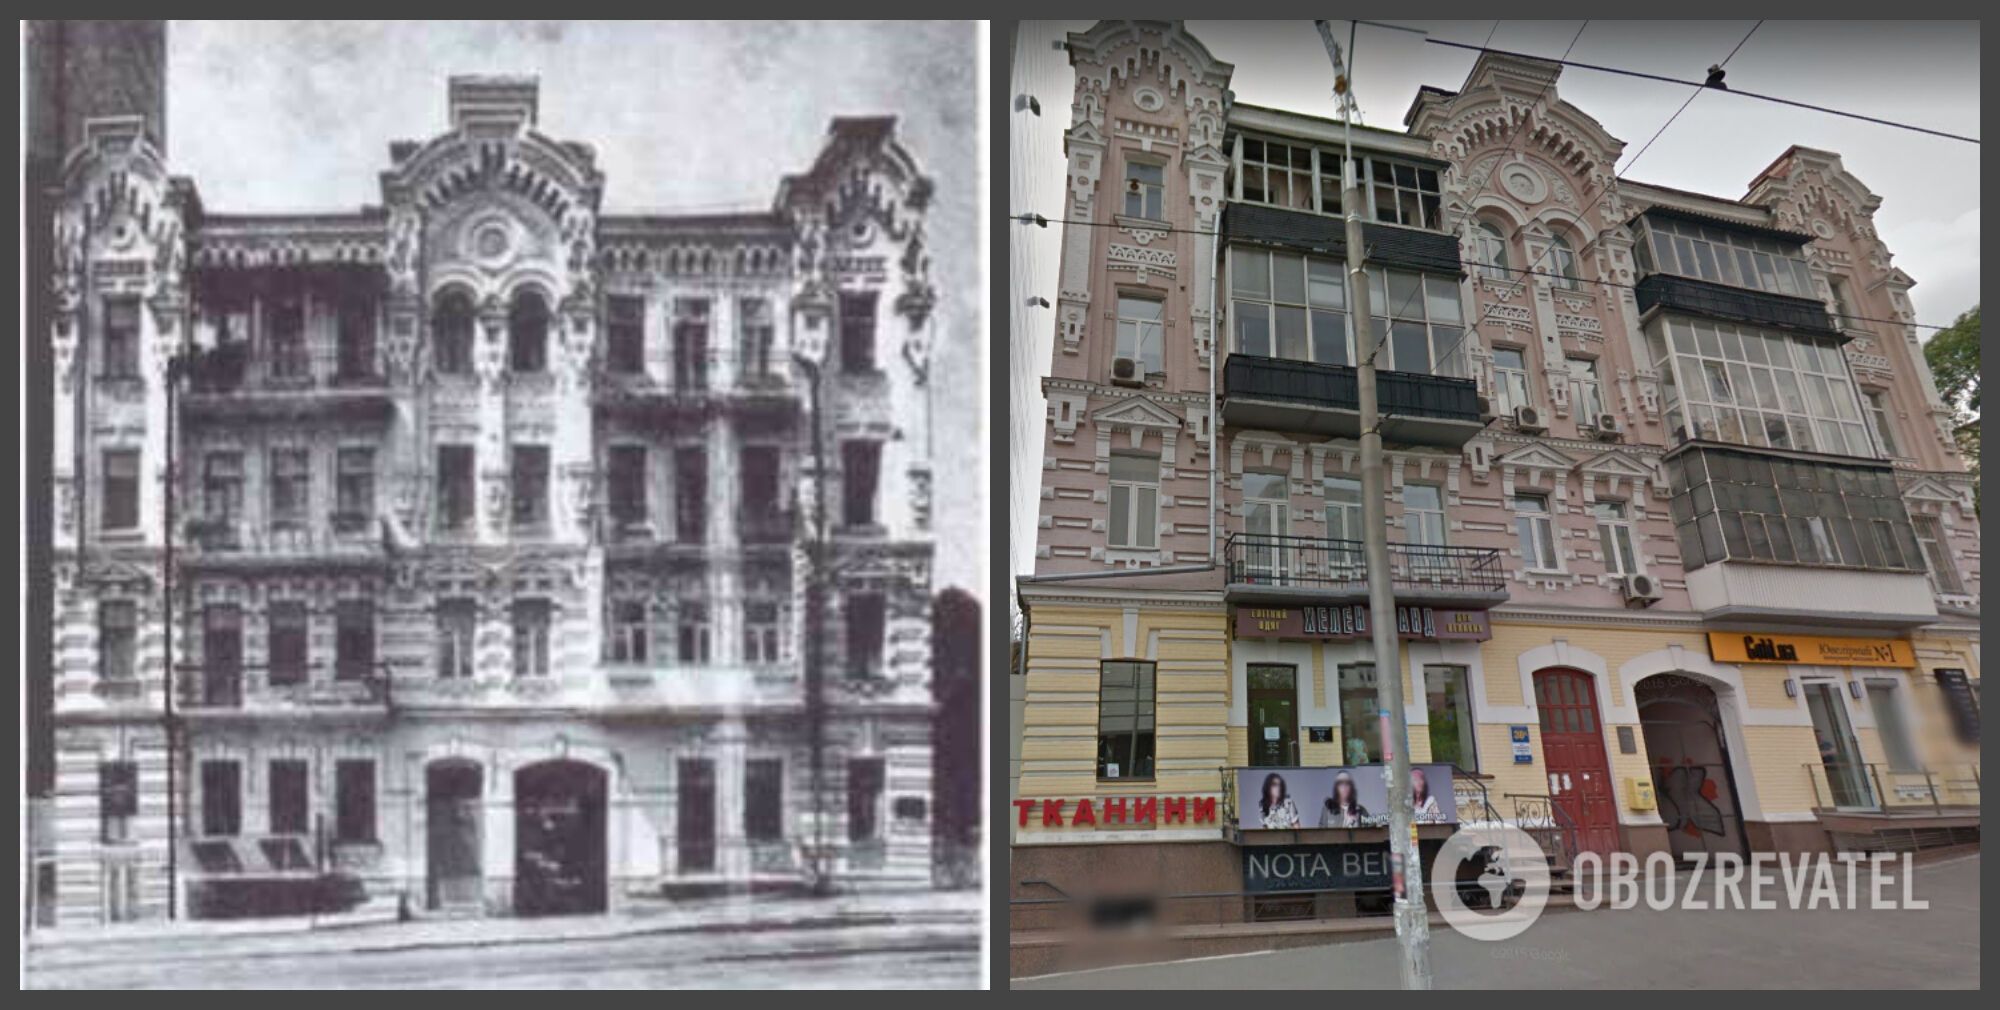 Дом на ул. Антоновича в прошлом веке и сегодня